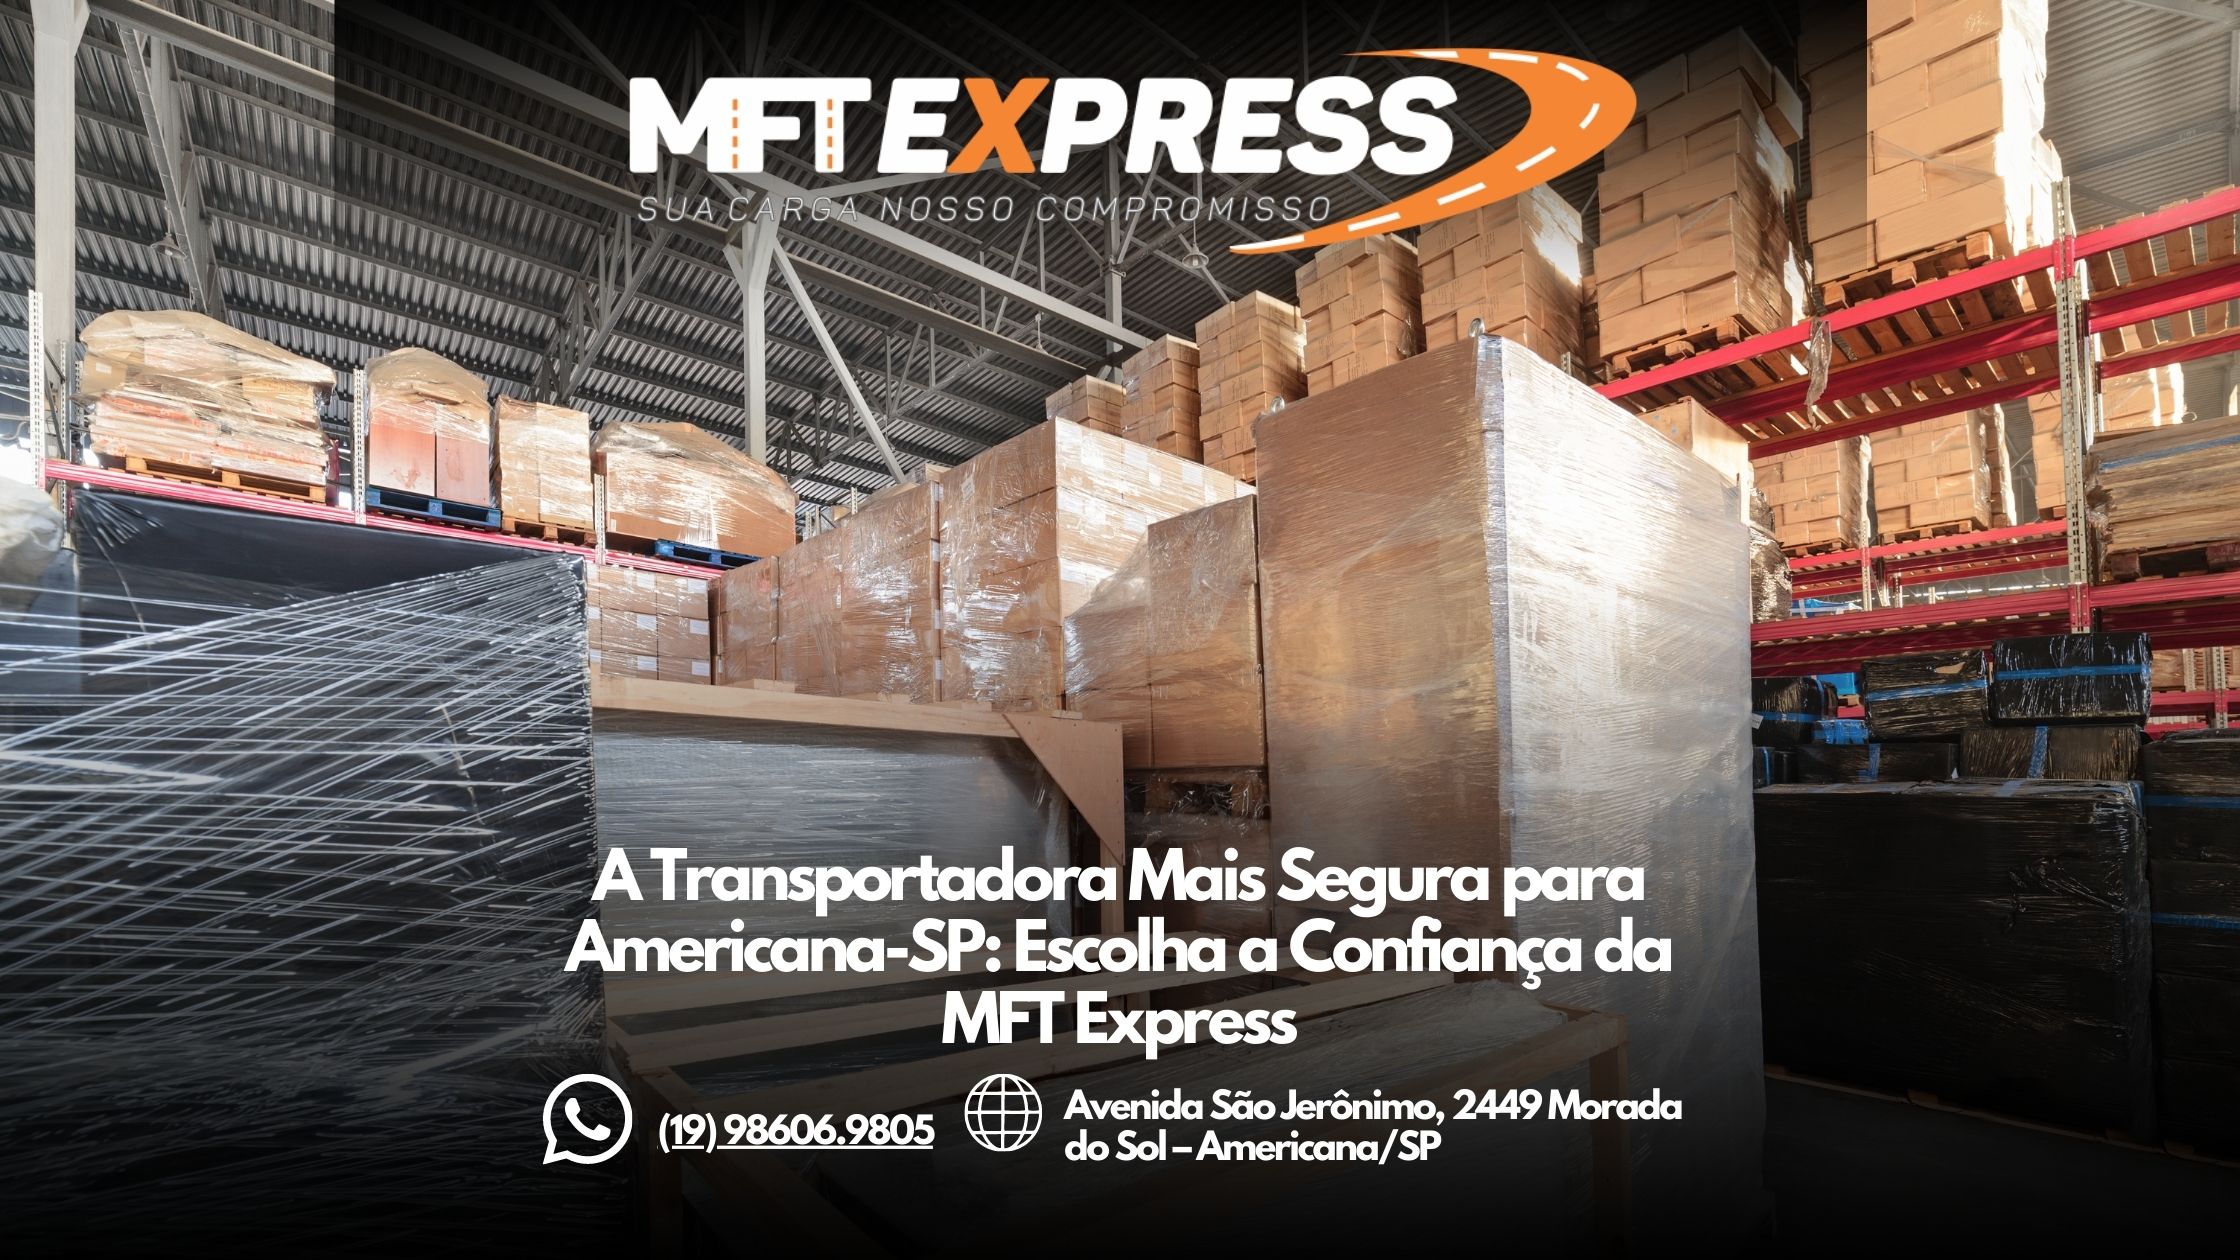 A Transportadora Mais Rápida para Americana-SP: Conheça a MFT